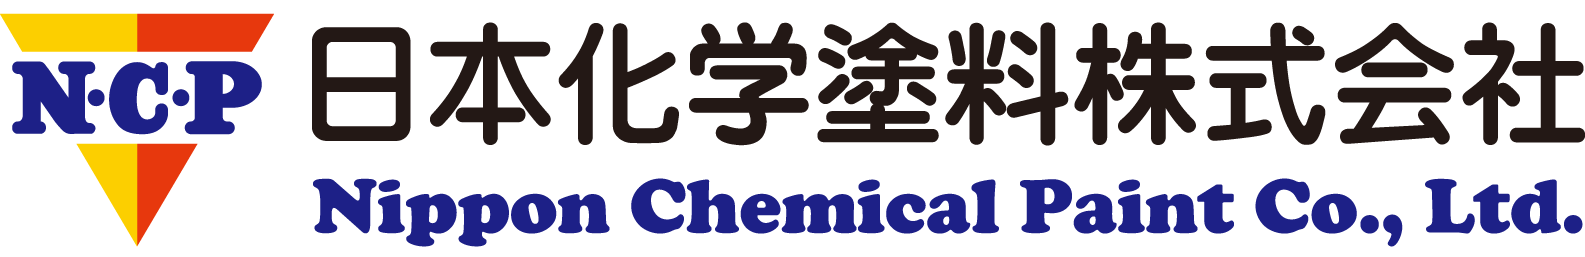 日本化学塗料株式会社